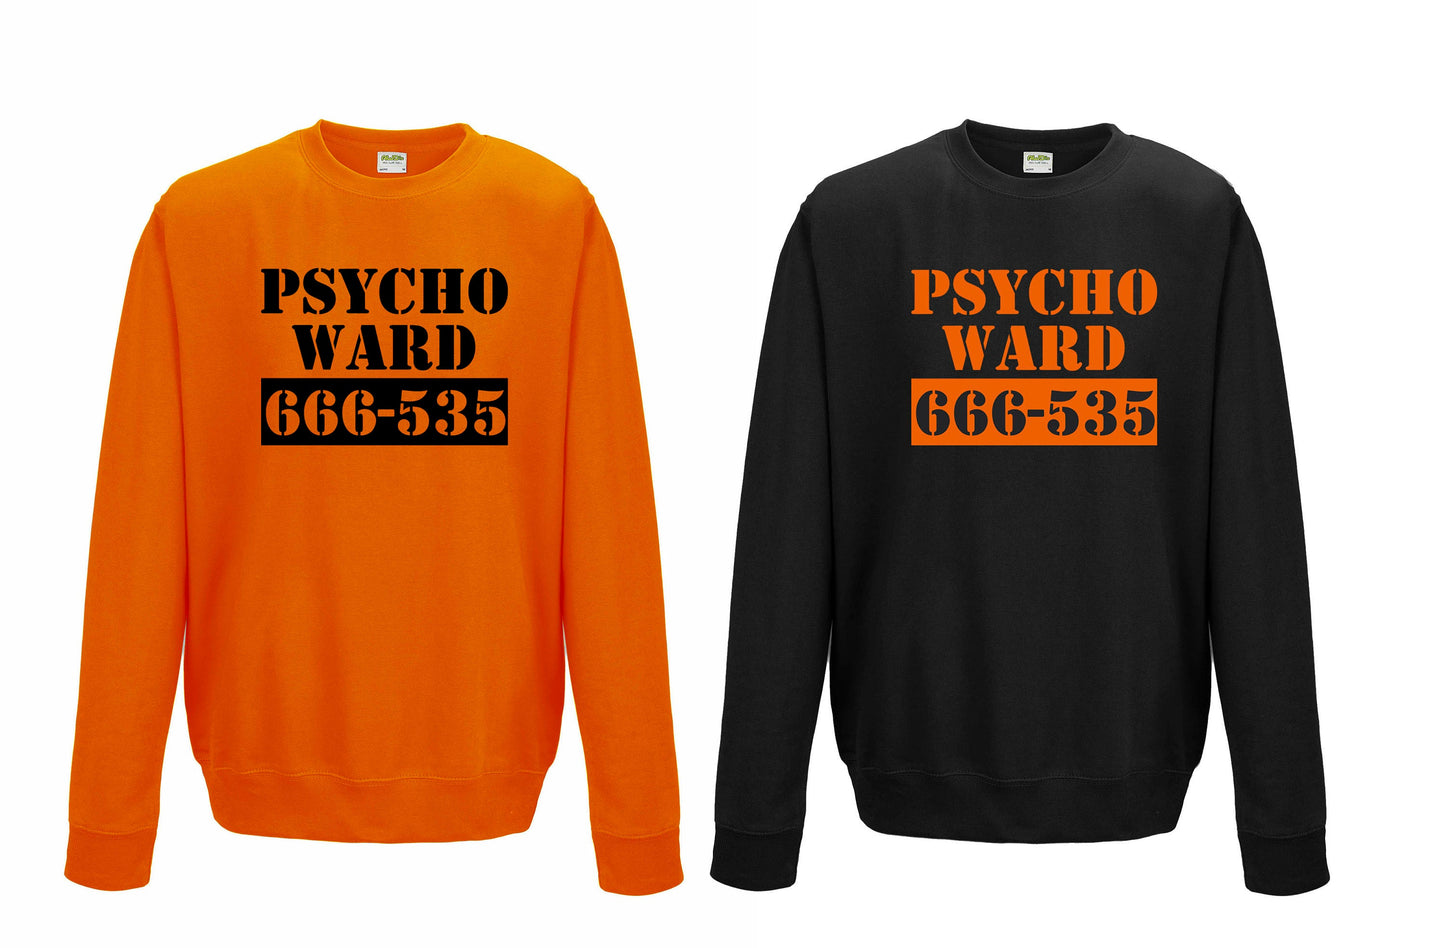 Psycho Ward JH030 HALLOWEEN Sweater Funny Joke